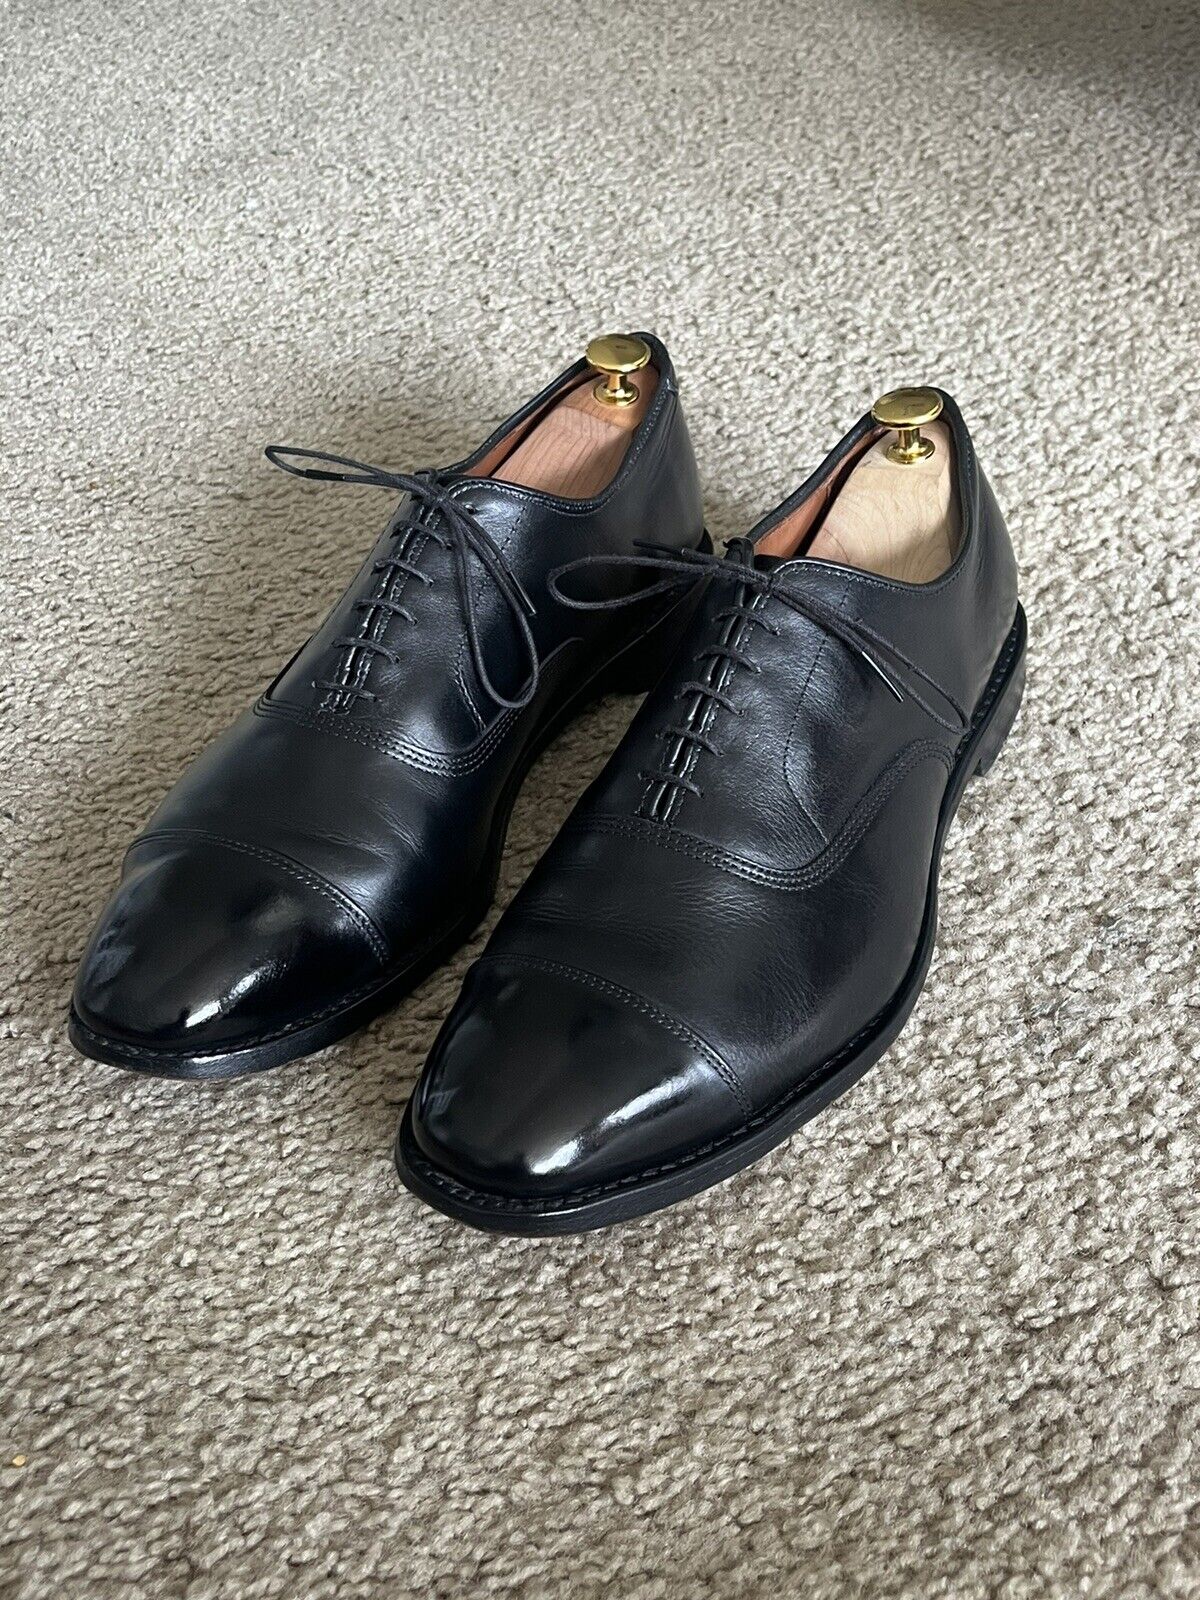 Allen Edmonds Park Avenue Oxford Black Leather Cap Toe Dress Shoe Men\'s 12 D